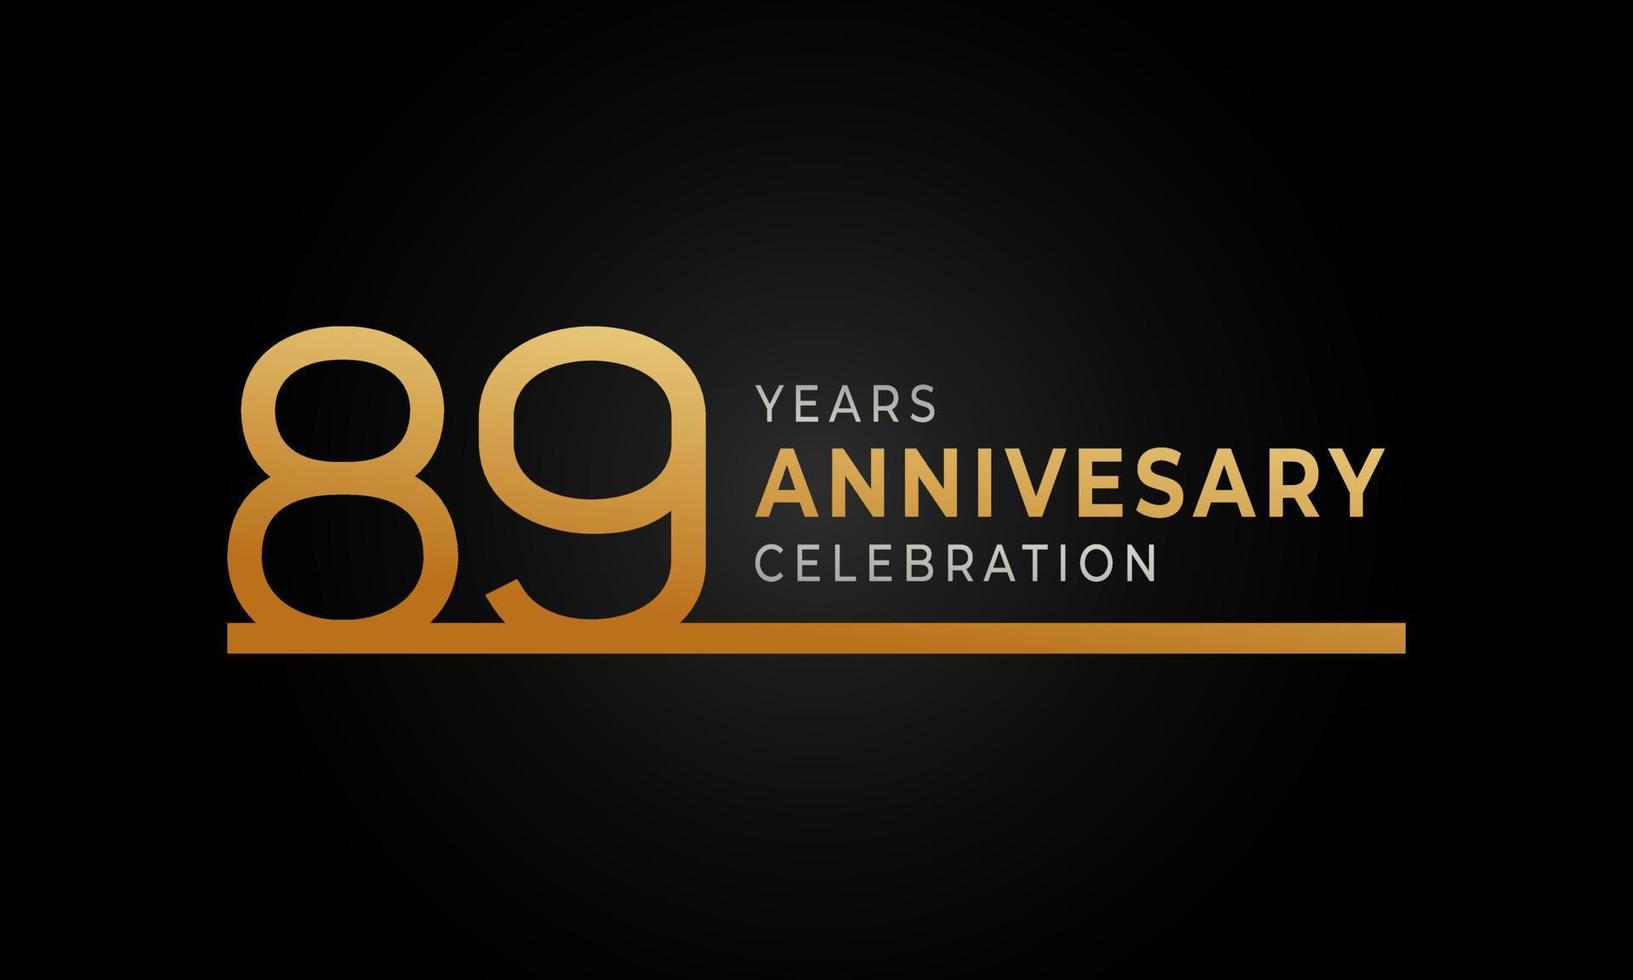 89-jarig jubileumviering logo met enkele regel gouden en zilveren kleur voor feestgebeurtenis, bruiloft, wenskaart en uitnodiging geïsoleerd op zwarte achtergrond vector